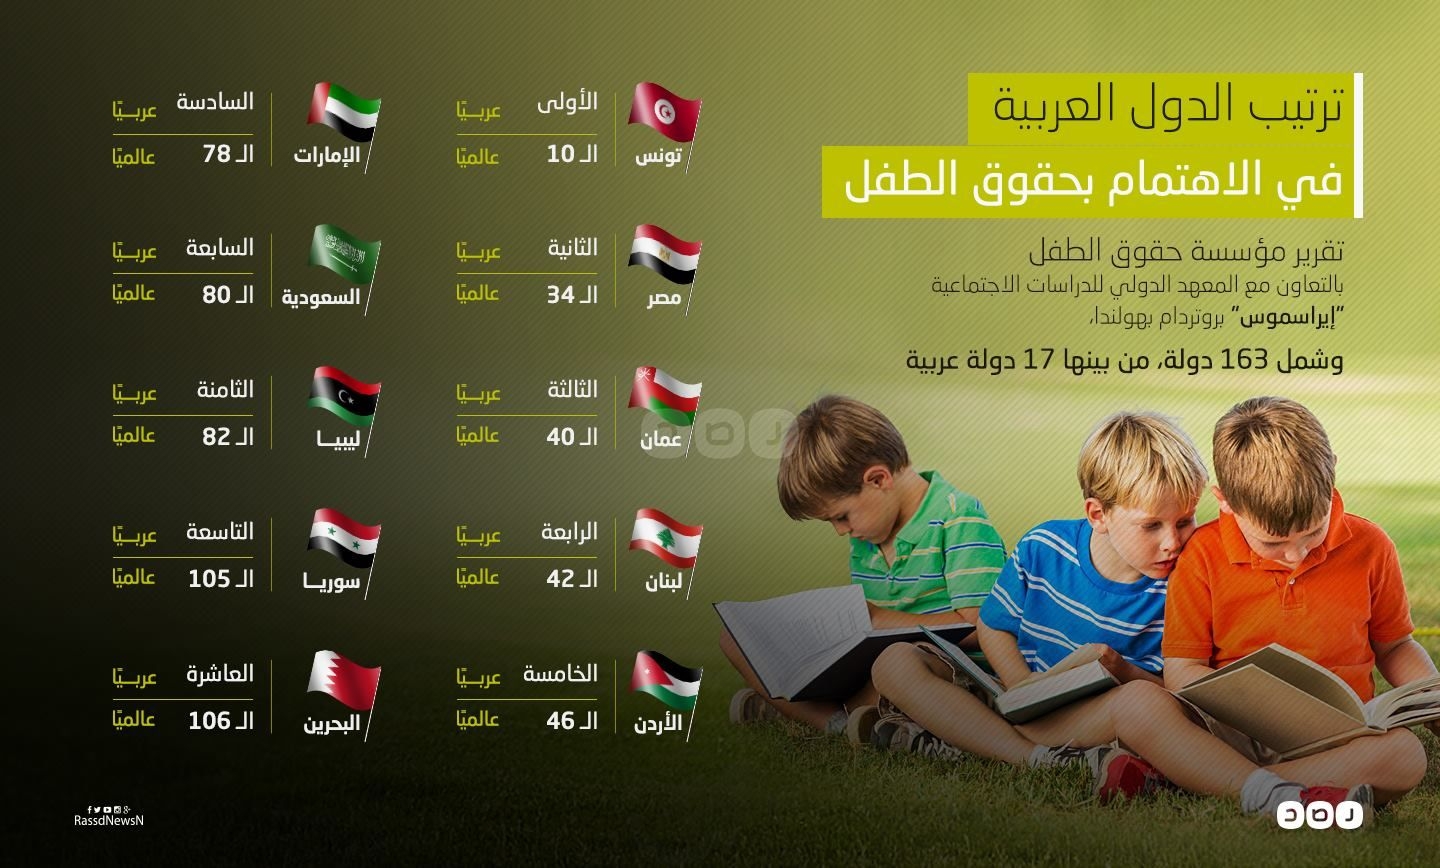 بالإنفوجرافيك.. تونس الأولي عربيًا ومصر الـ34 عالميًا في حقوق الطفل